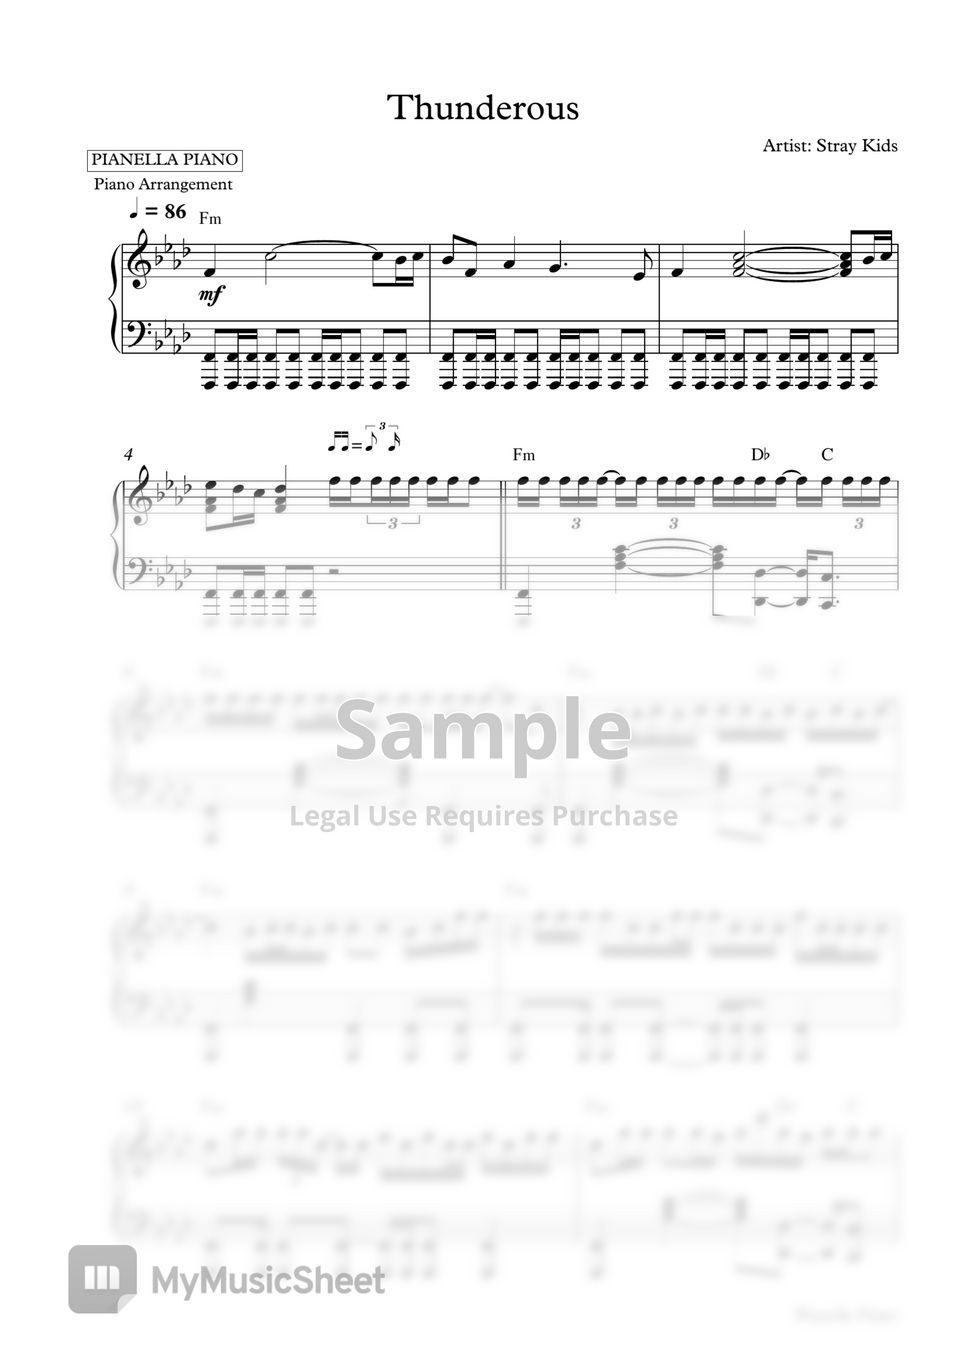 Stray Kids - Thunderous (Piano Sheet) by Pianella Piano